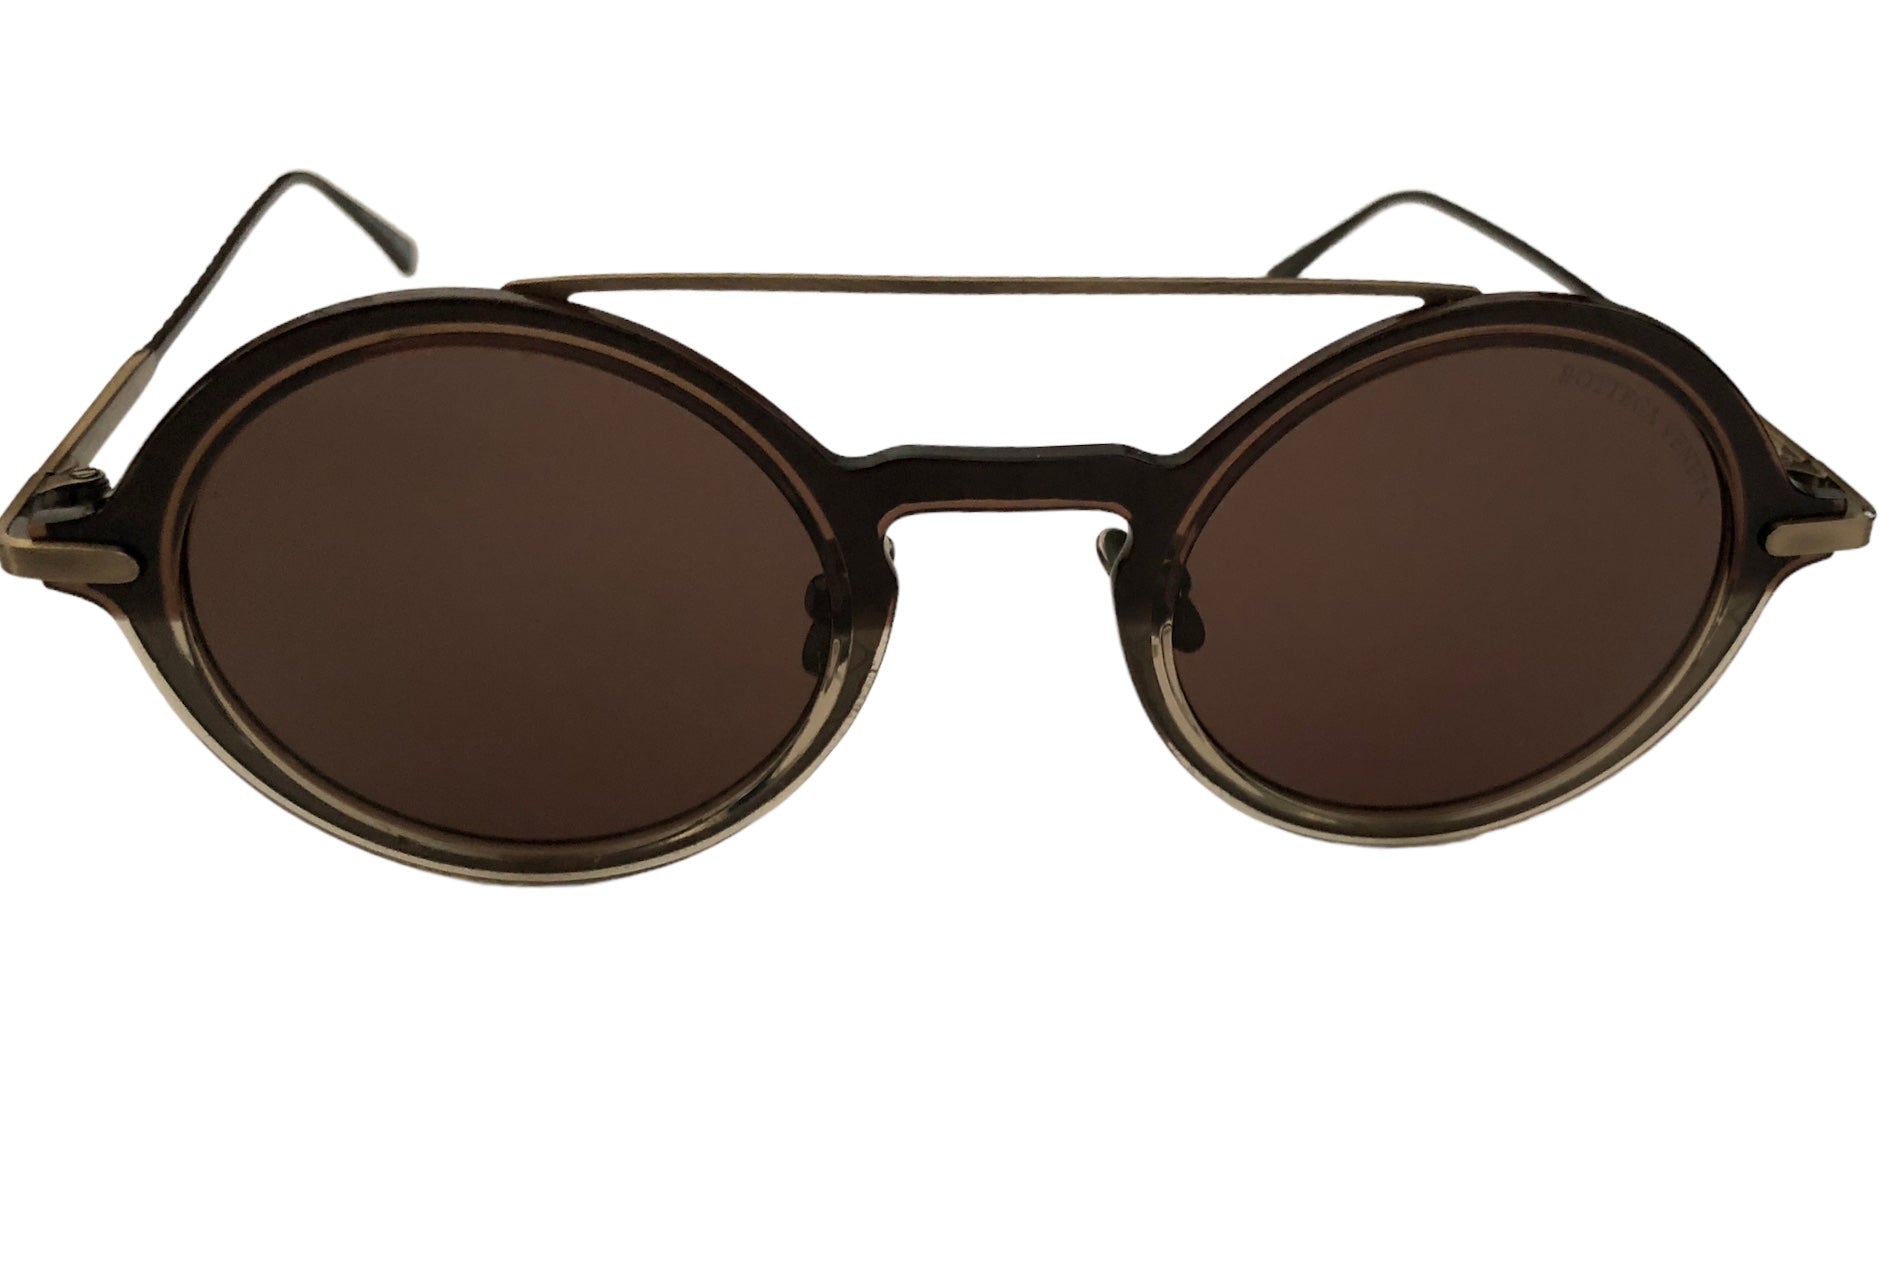 1 Pcs Polarized Sunglasses For Men, Uv Protection, Round Gothic Shades  Style Women, Metal Circle Frame | Fruugo ZA